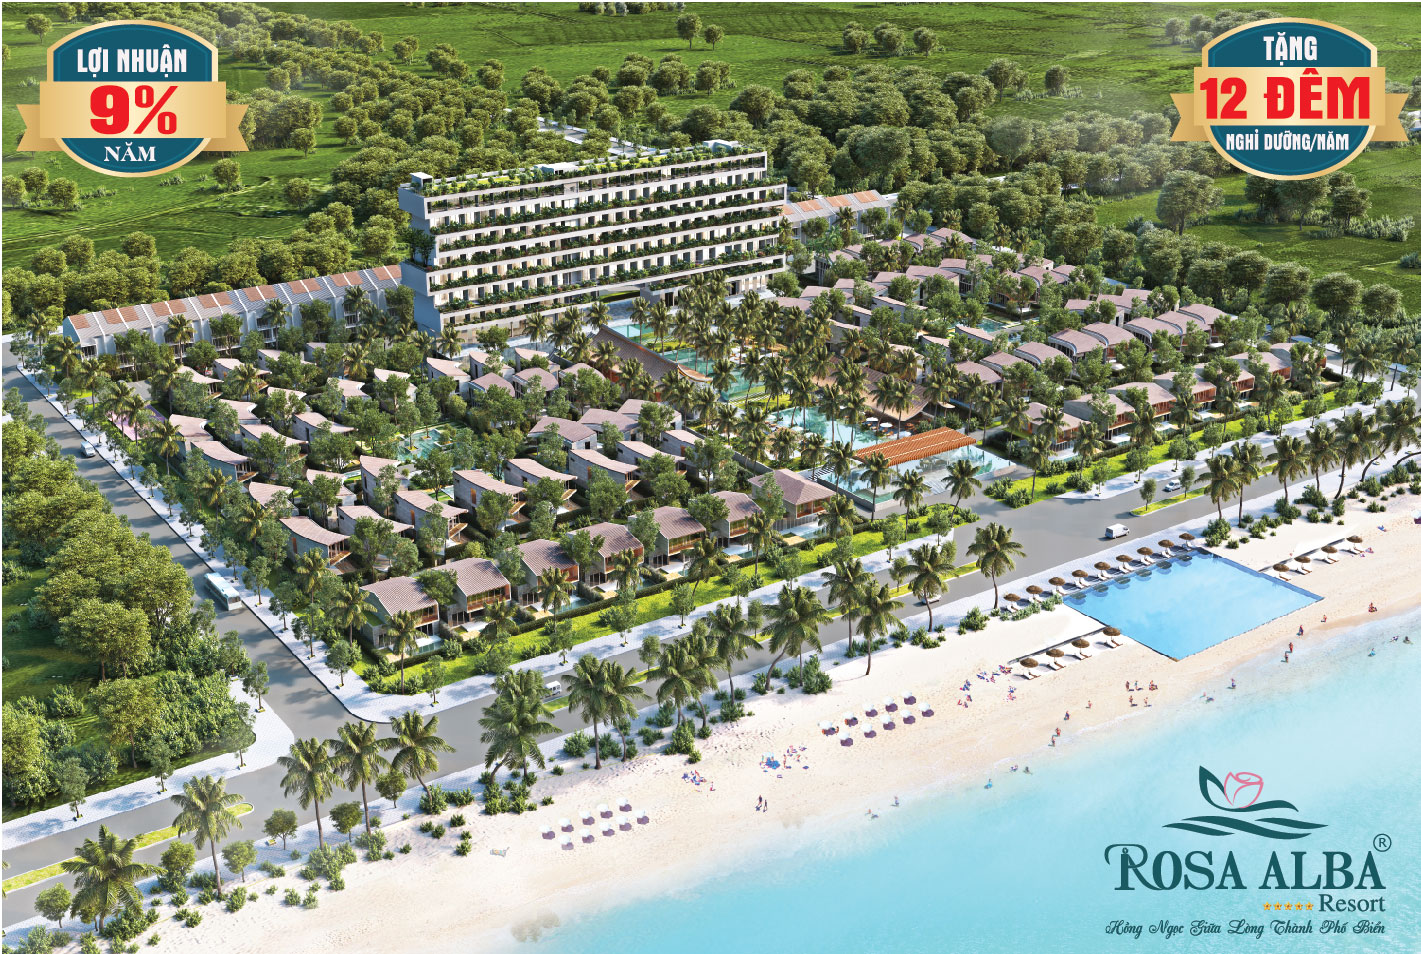 Rosa alba biệt thự biển đầu tiên được cấp phép xây dựng tại Phú Yên